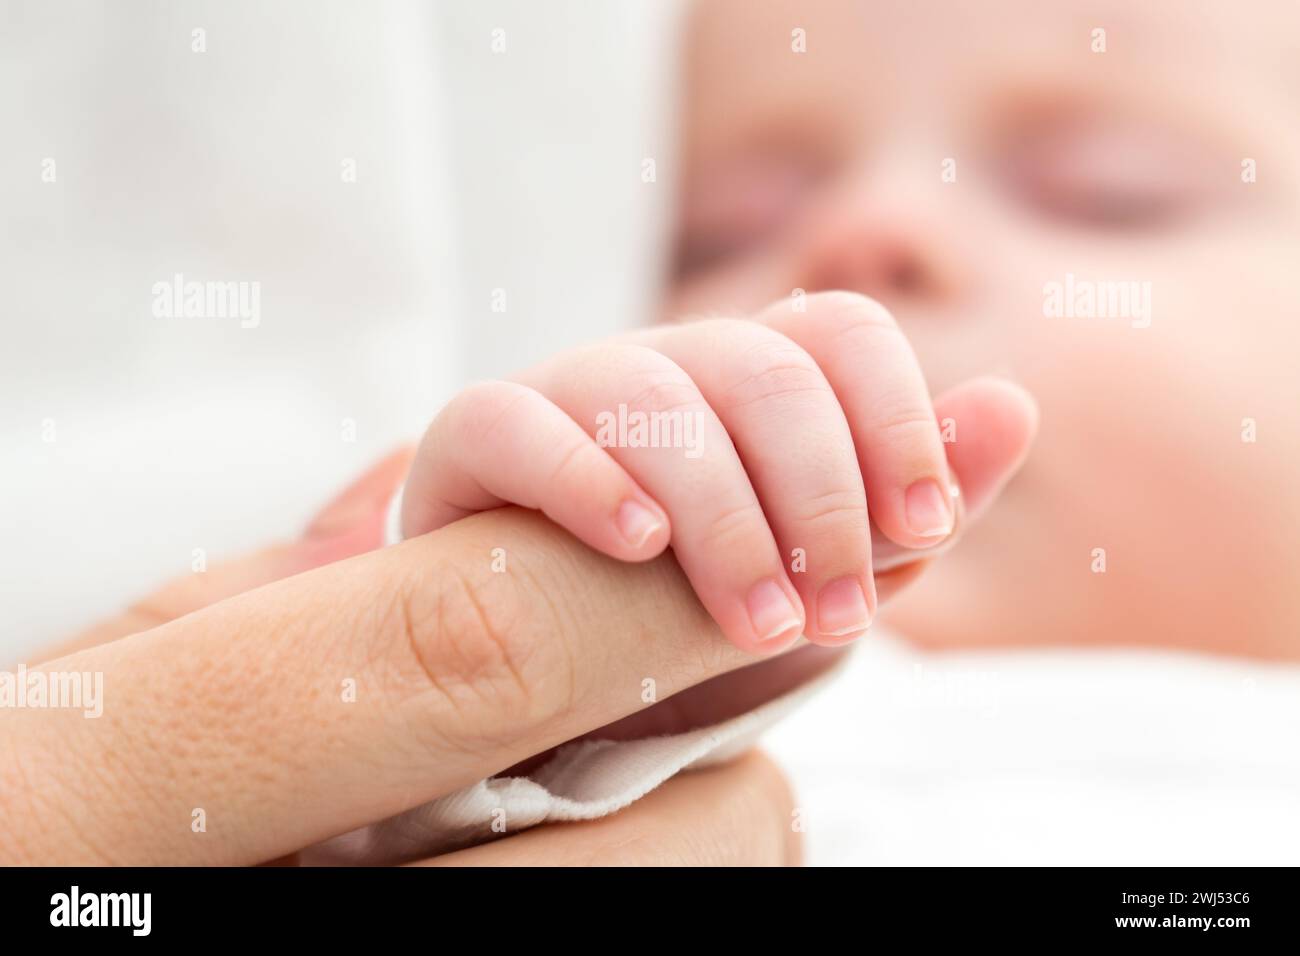 Die winzige Hand des Neugeborenen klammert den Finger der Mutter. Konzept mütterlicher Bindung und Liebe Stockfoto